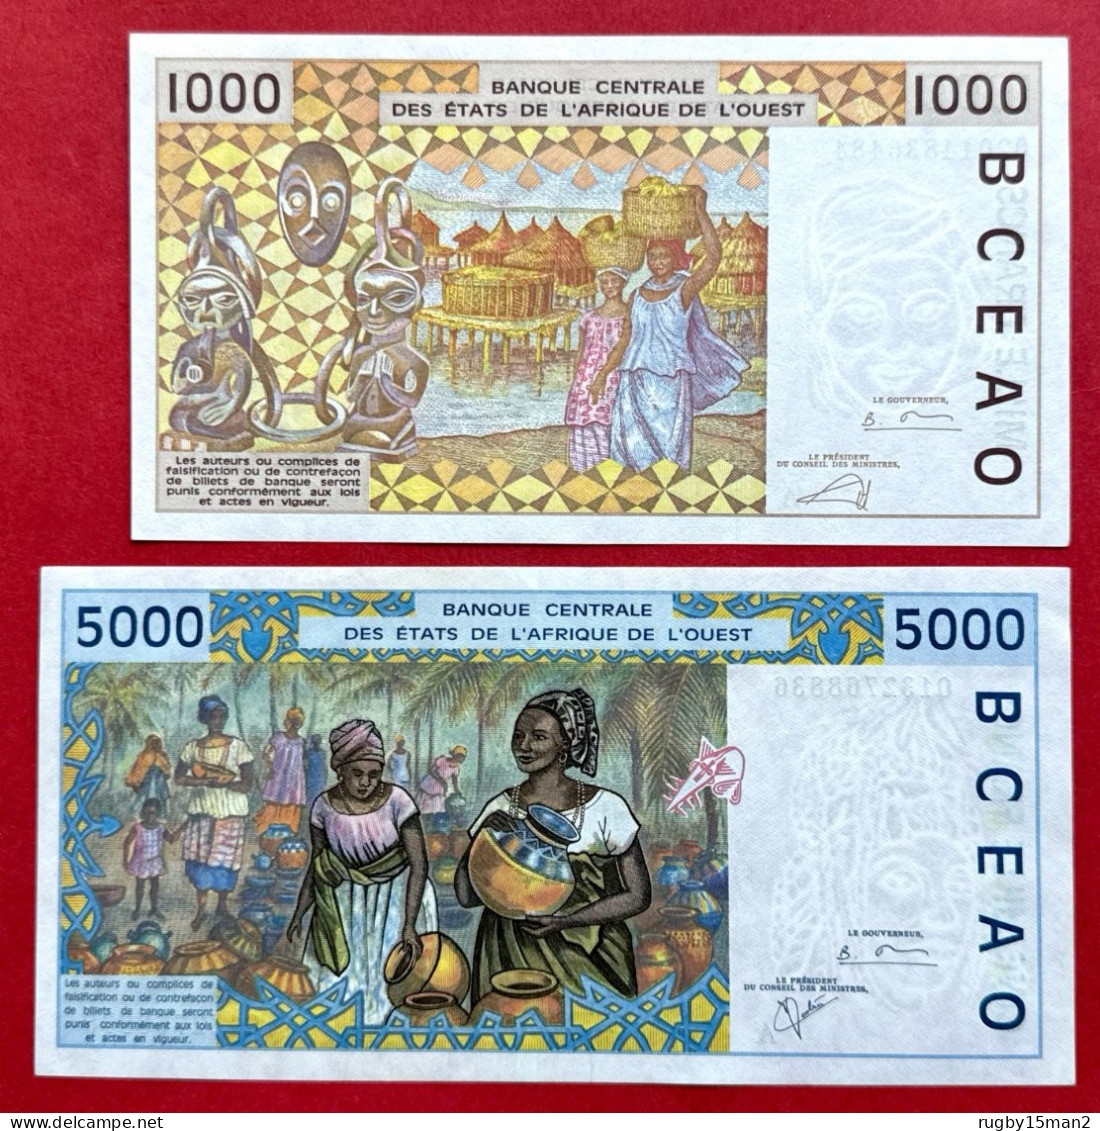 N°82 BILLETS DE 1000 & 5000 FRANCS COTE D'IVOIRE NEUF/UNC & Pr NEUF/aUNC - Costa D'Avorio